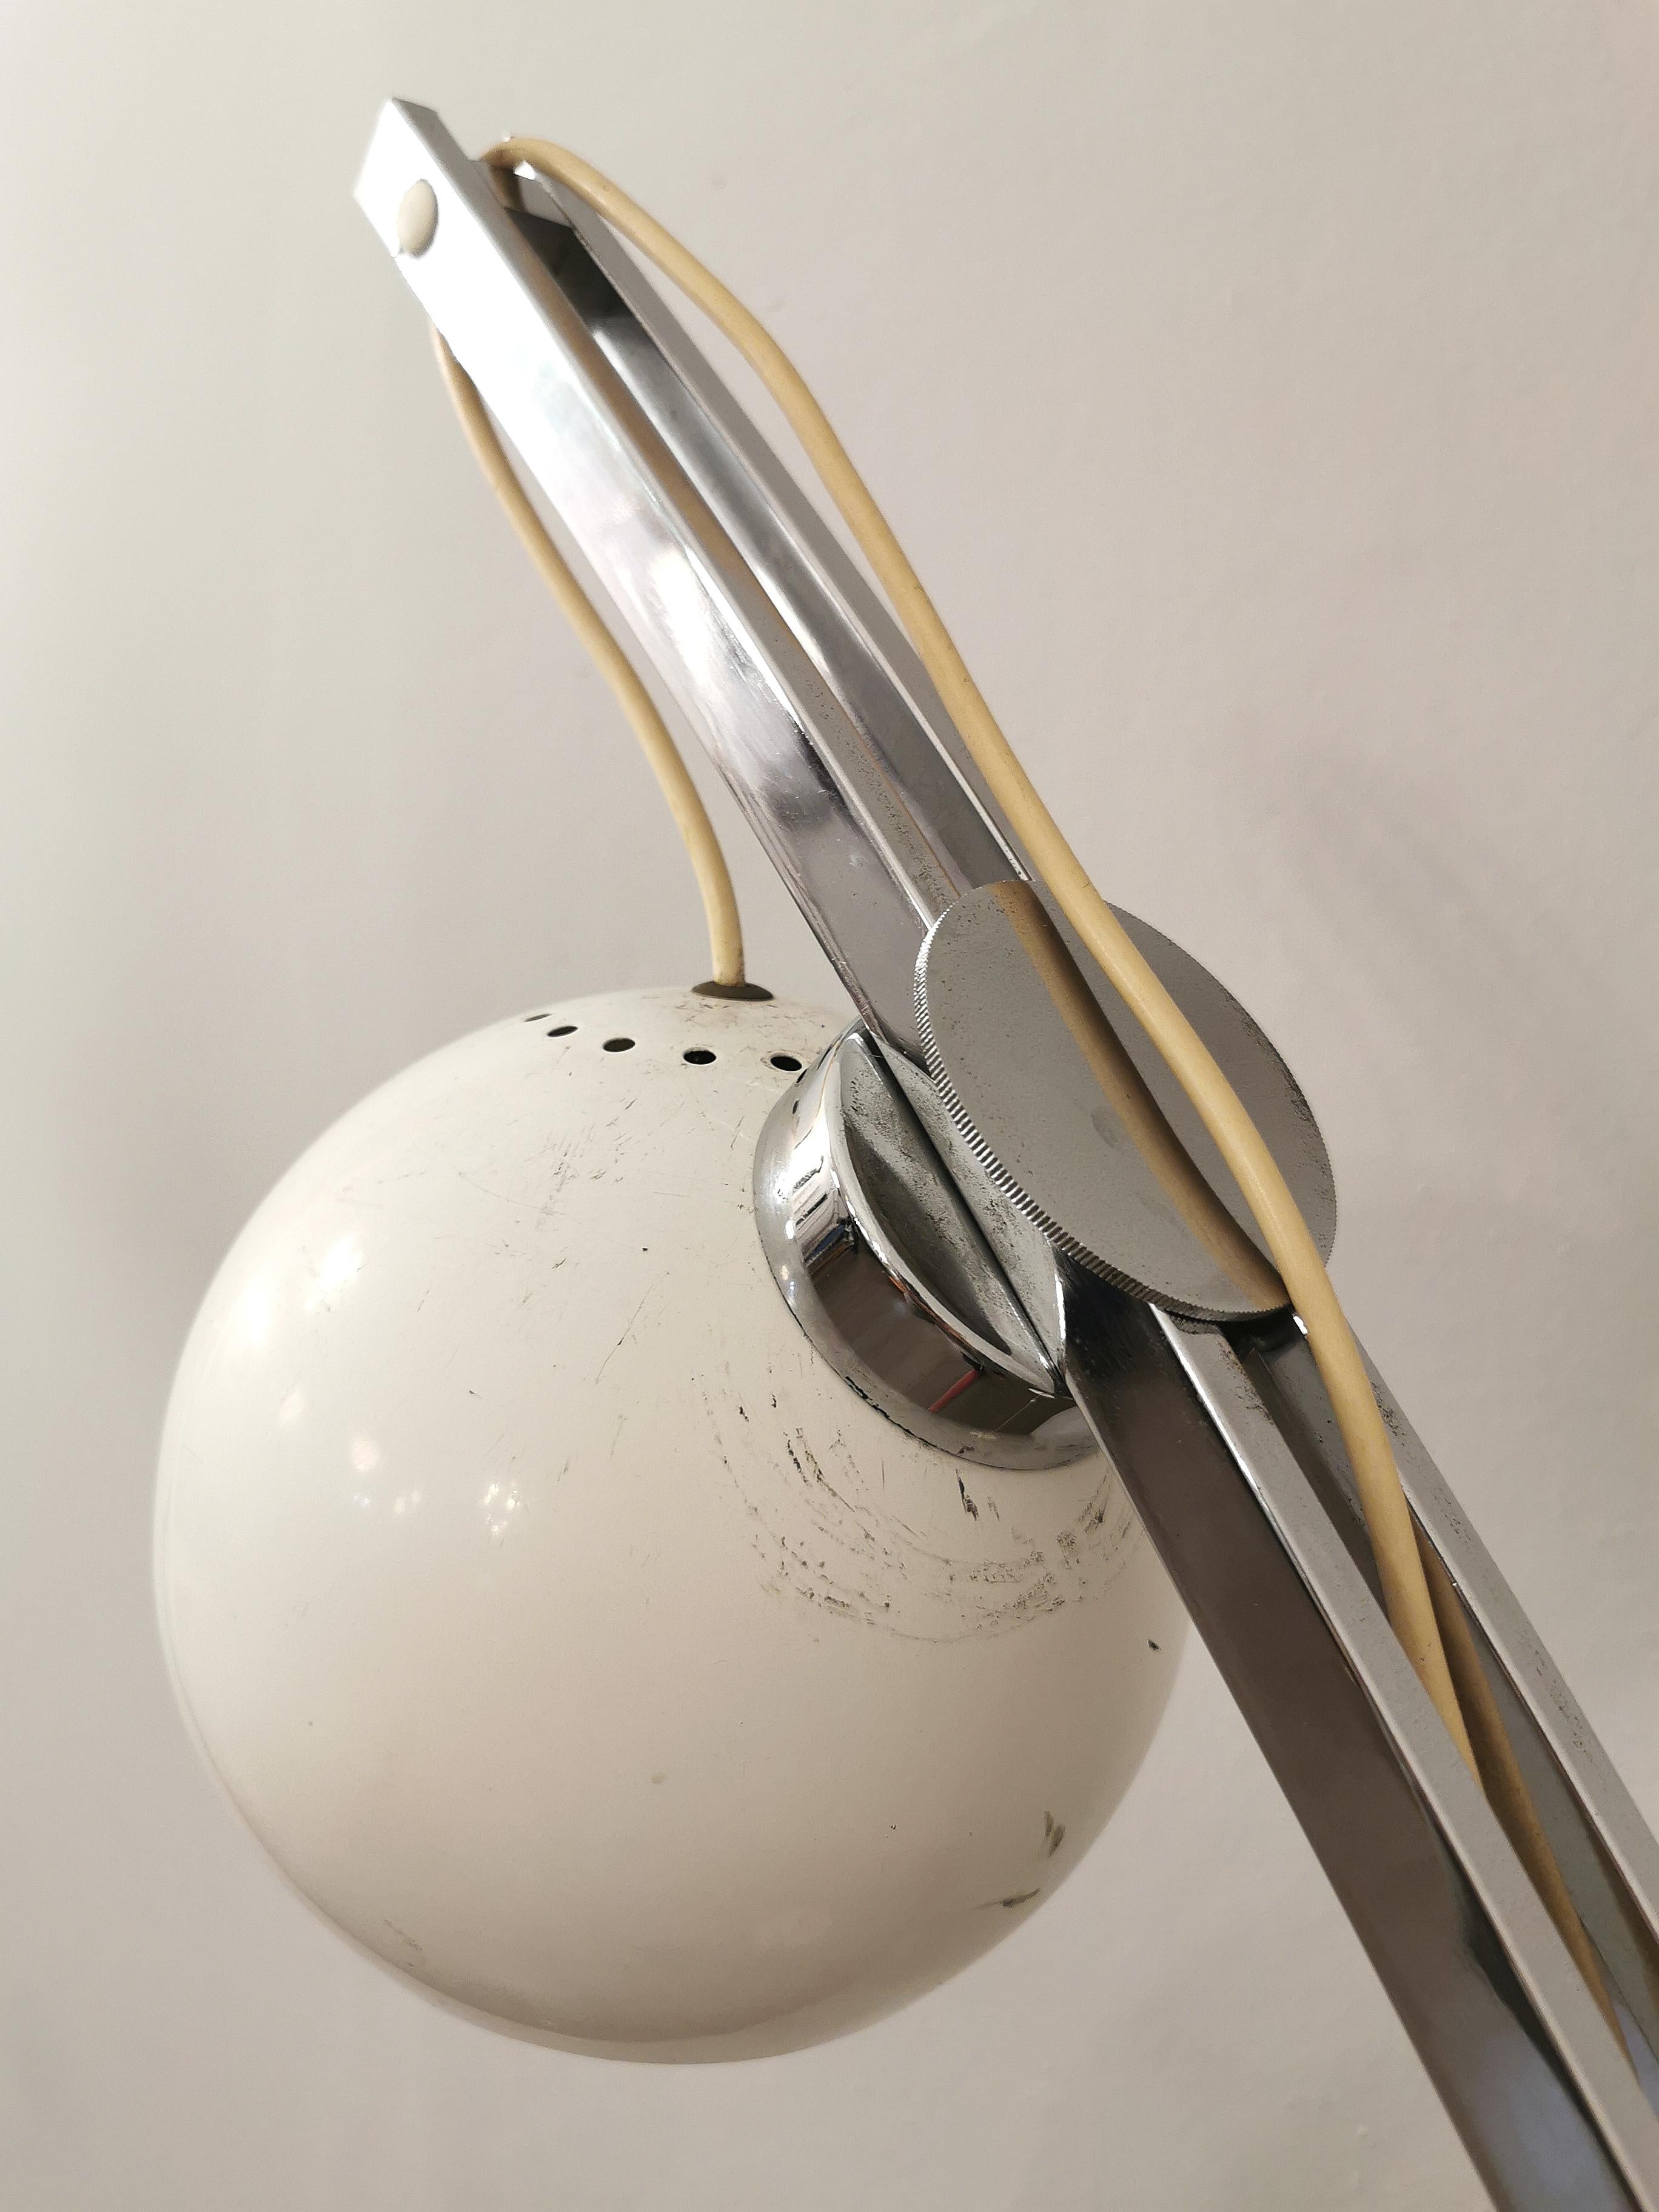 Midcentury Floor Lamp Reggiani Style Chromed Enameled Metal Italian Design 1970s For Sale 3